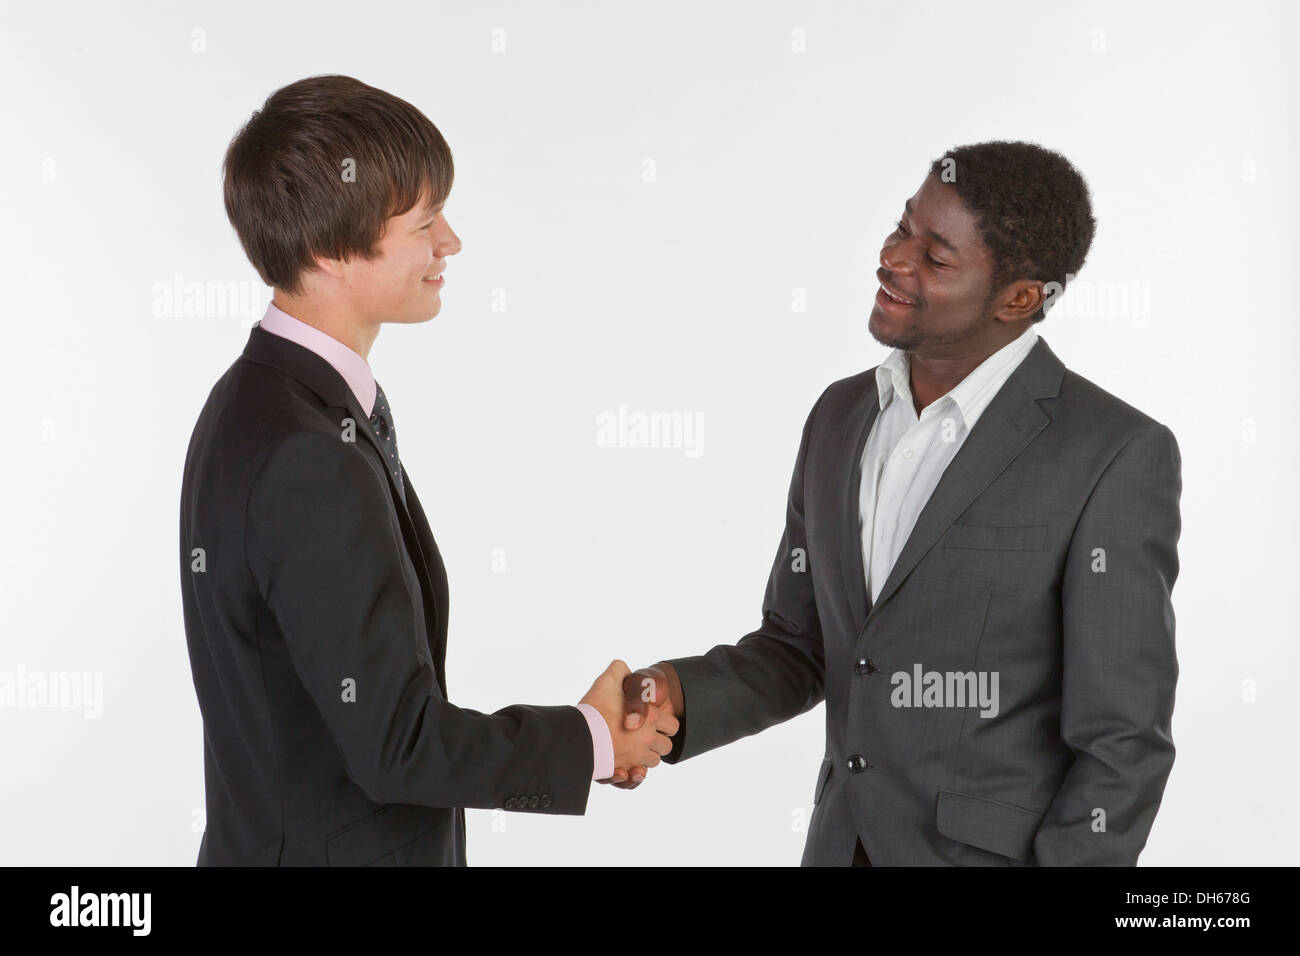 Deux jeunes hommes de différentes races shaking hands Banque D'Images